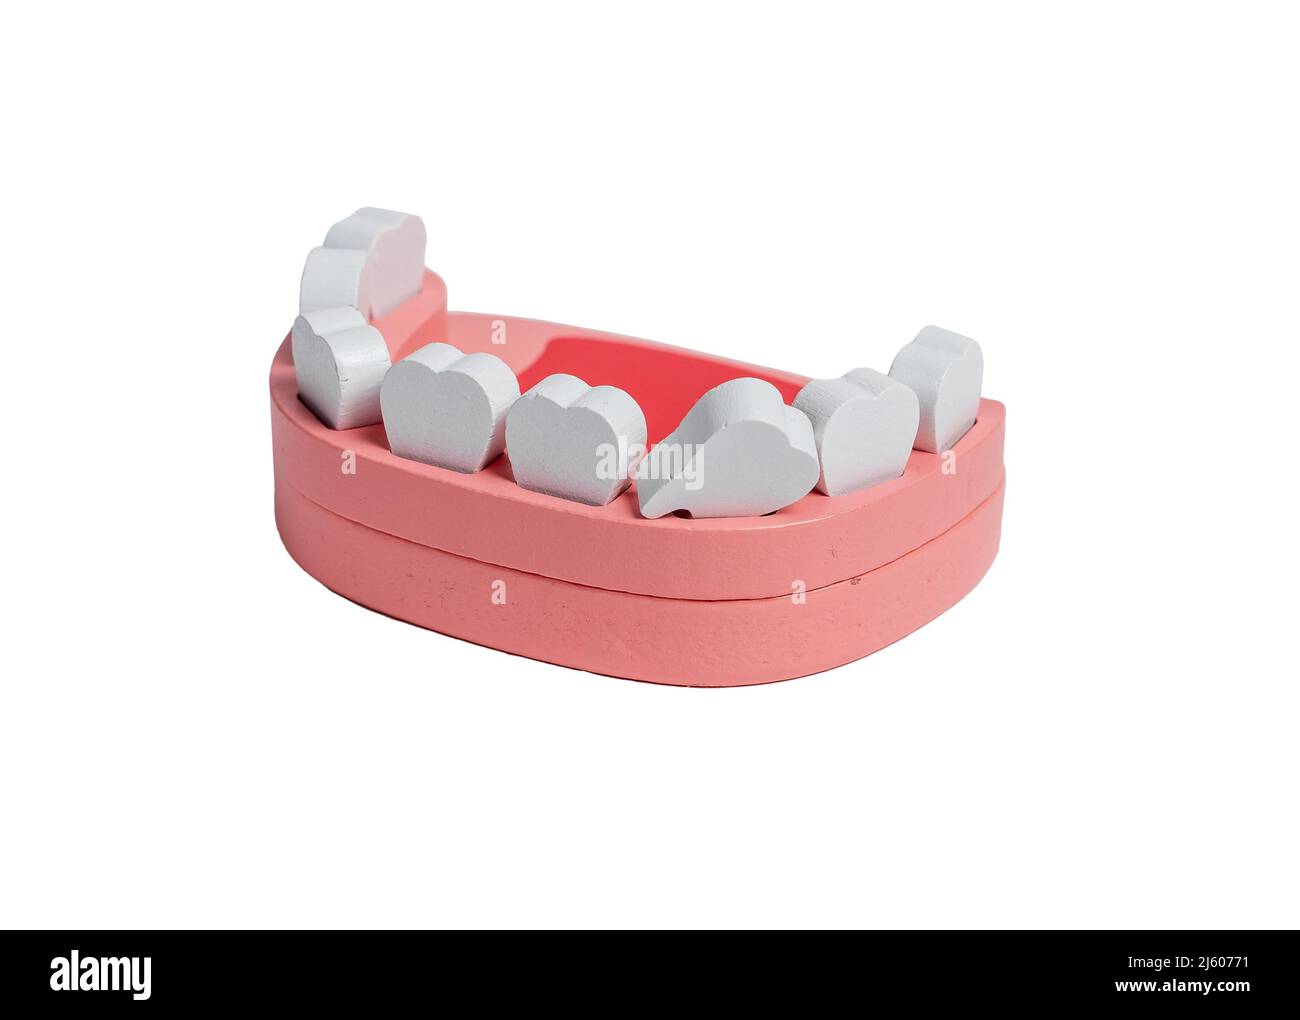 Perdita di dente di latte. Modello di mandibola umana in legno isolato su sfondo bianco. Denti decidui, del bambino. Giocattolo per bambini. Foto di alta qualità Foto Stock